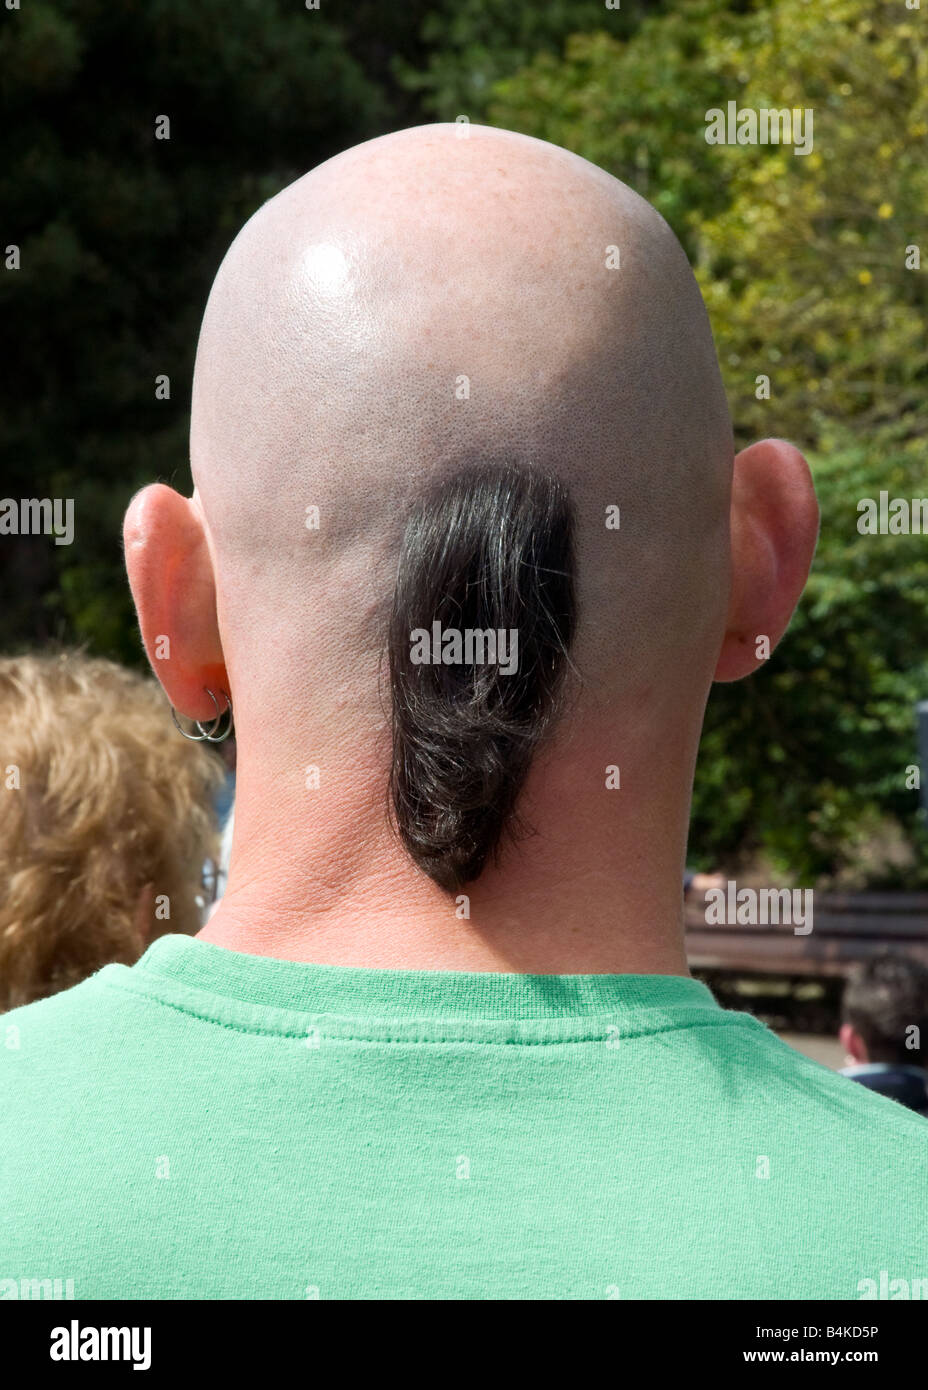 Büschel von langen Haaren auf dem Rücken des Mannes mit einem rasierten Kopf Stockfoto